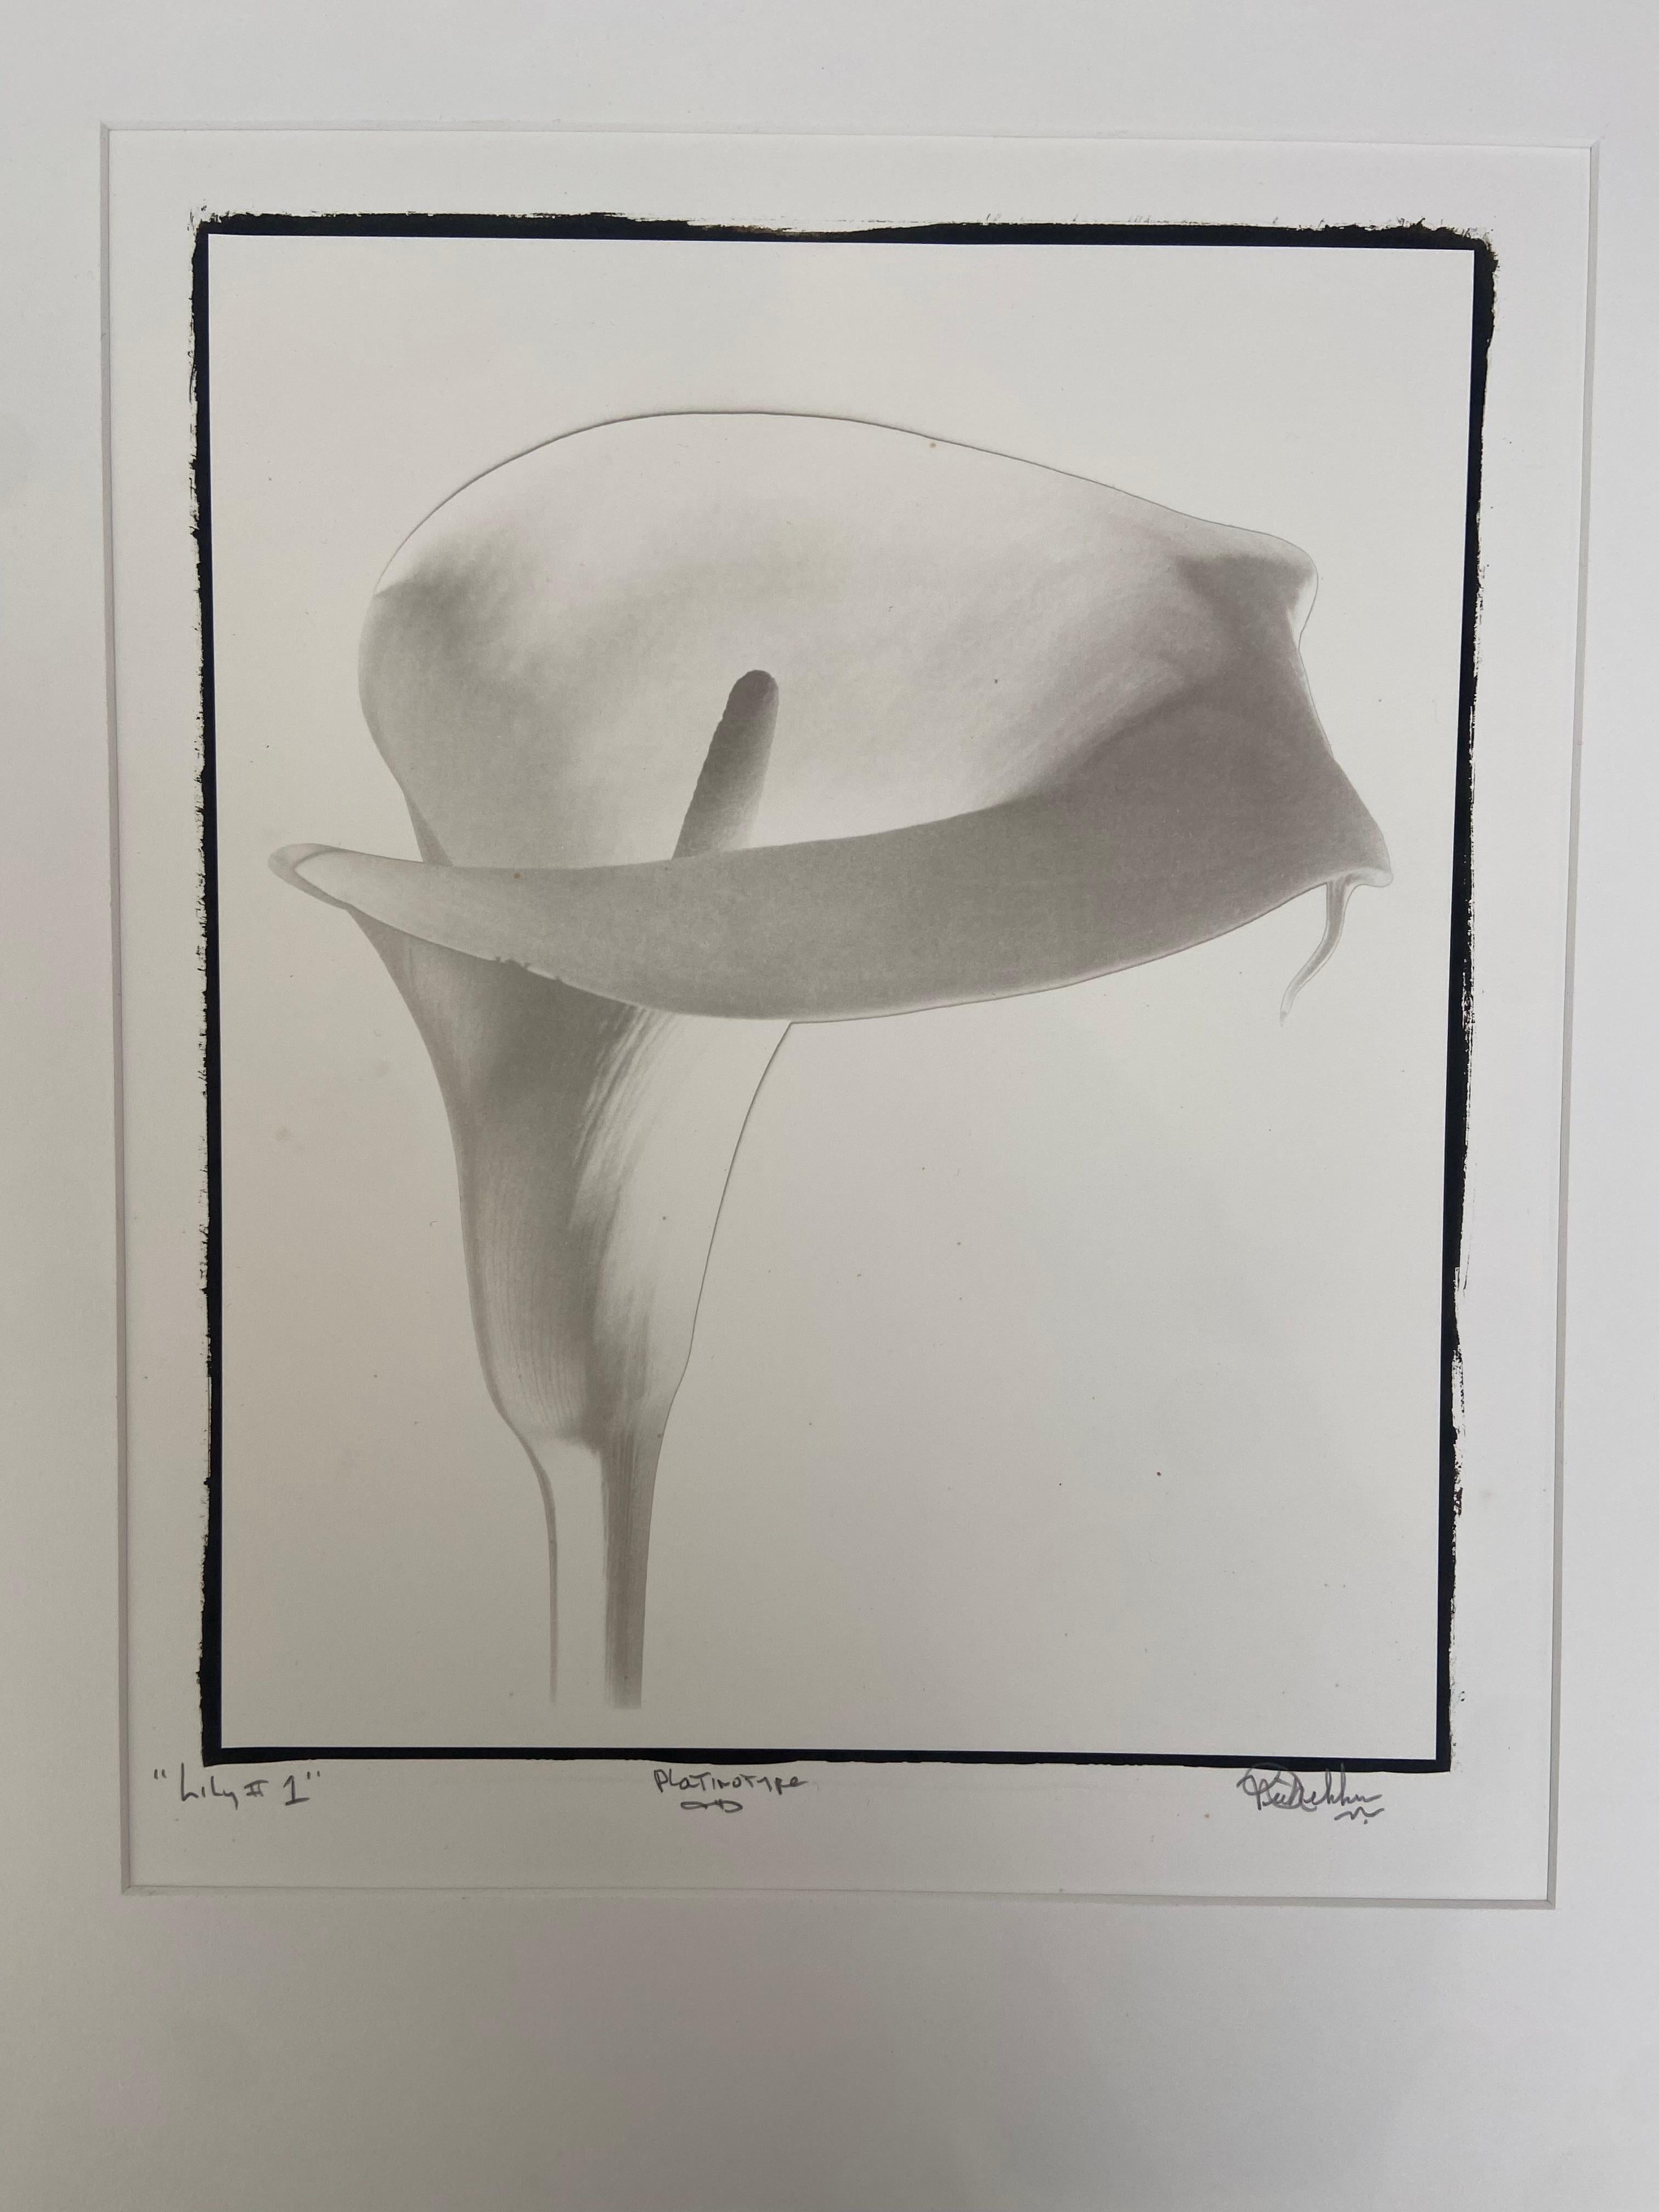 Nick Decker
Lily #1 (Platinotype), 1980, imprimé en 2006
photographie en noir et blanc
Dimensions de l'image : 12 x 9.75 pouces  (30.5 x 24.8 cm)
Dimensions montées : 20 x 16 pouces  (50,8 x 40,6 cm)
Dimensions du papier : 16 x 14 pouces  (40.6 x